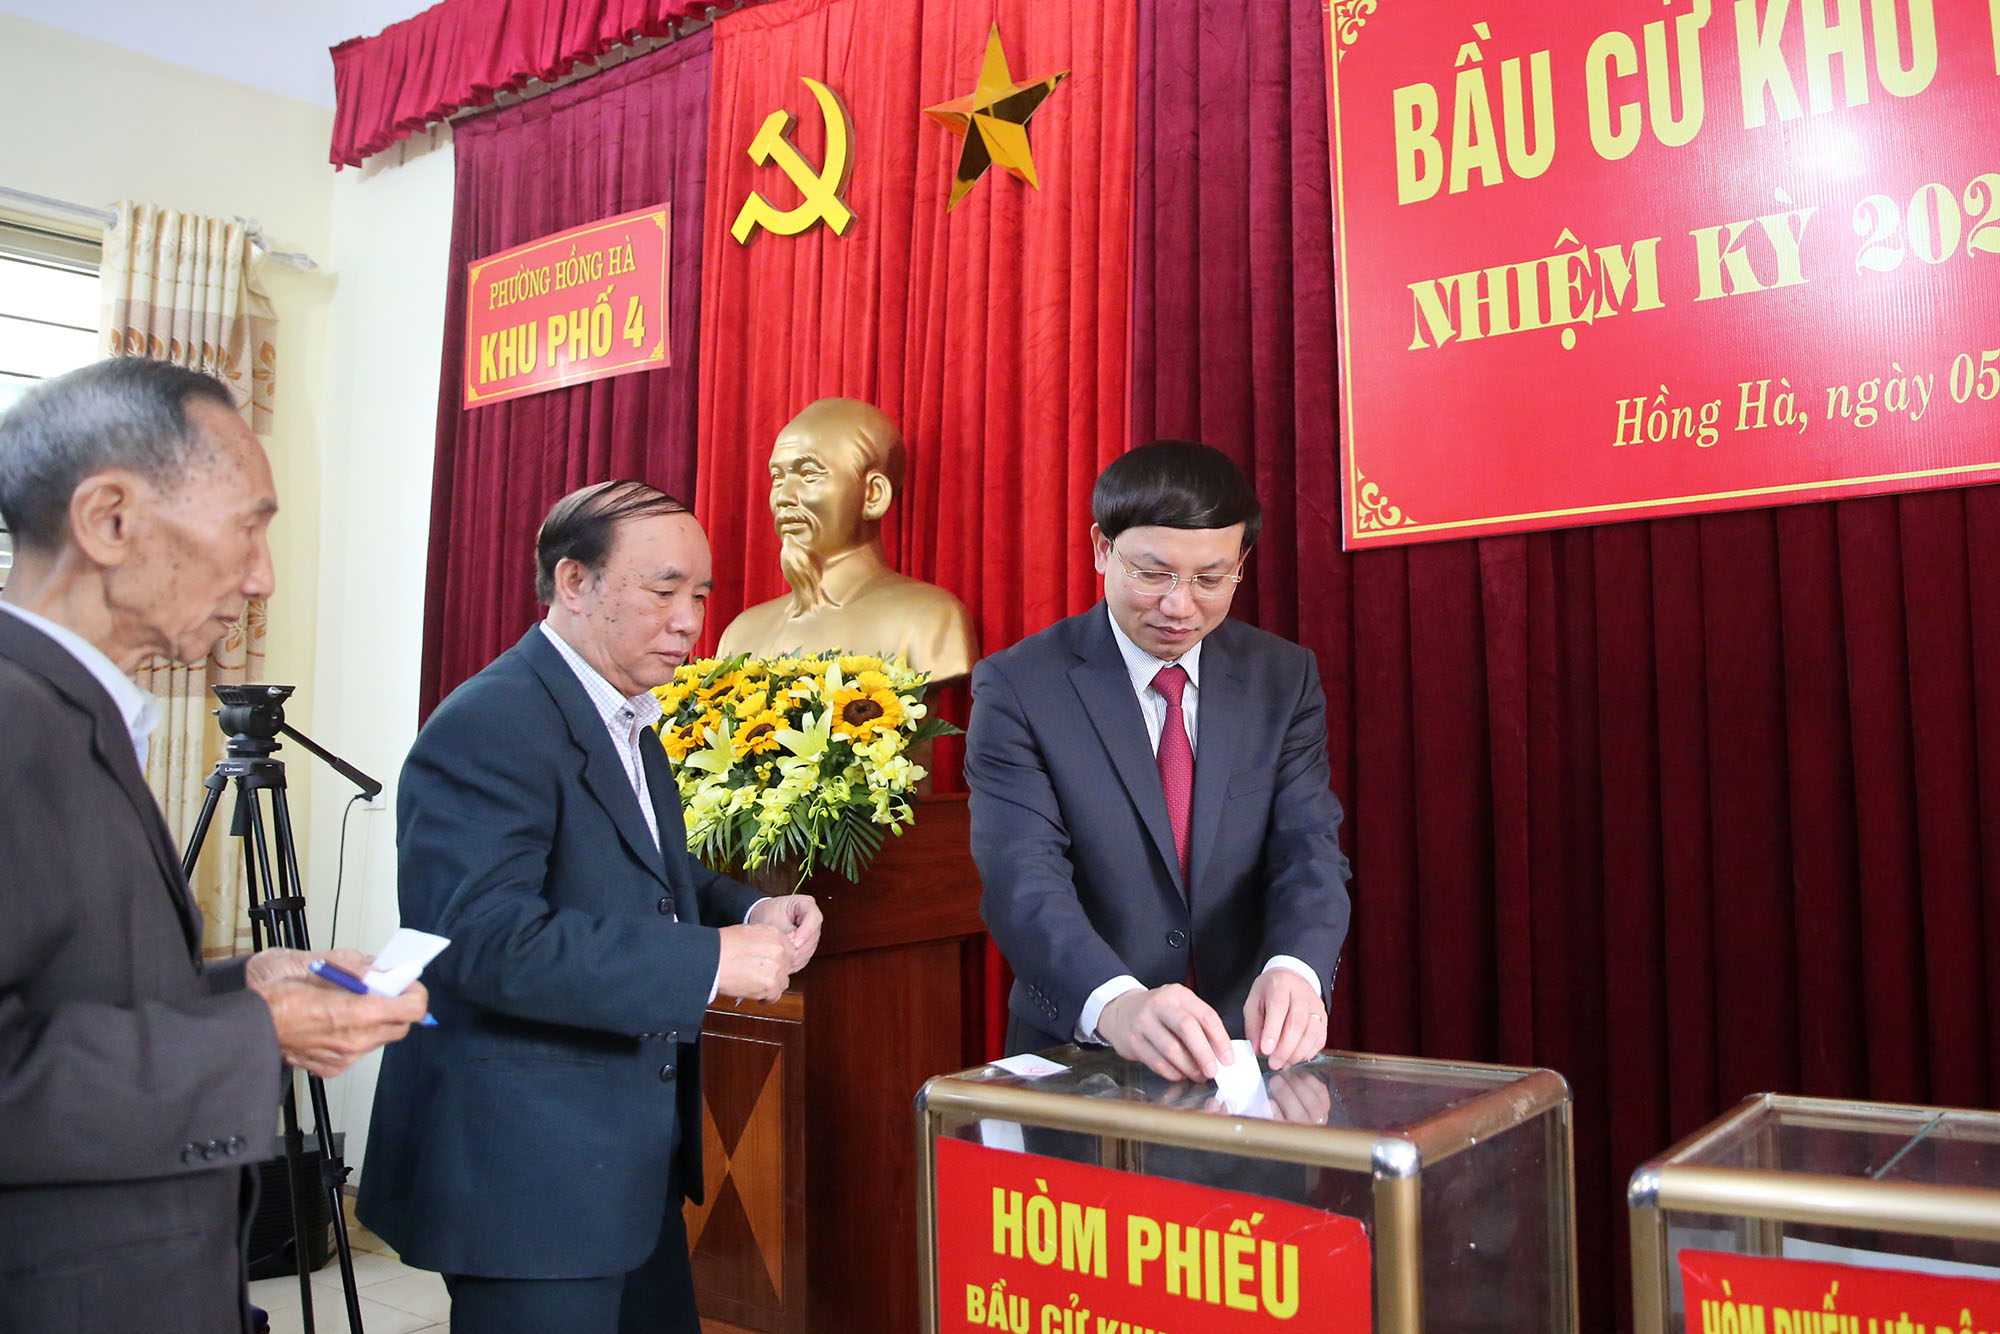 Đồng chí Nguyễn Xuân Ký, Bí thư Tỉnh ủy, Chủ tịch HĐND tỉnh, bỏ phiếu bầu trưởng khu phố 4, phường Hồng Hà (TP Hạ Long).